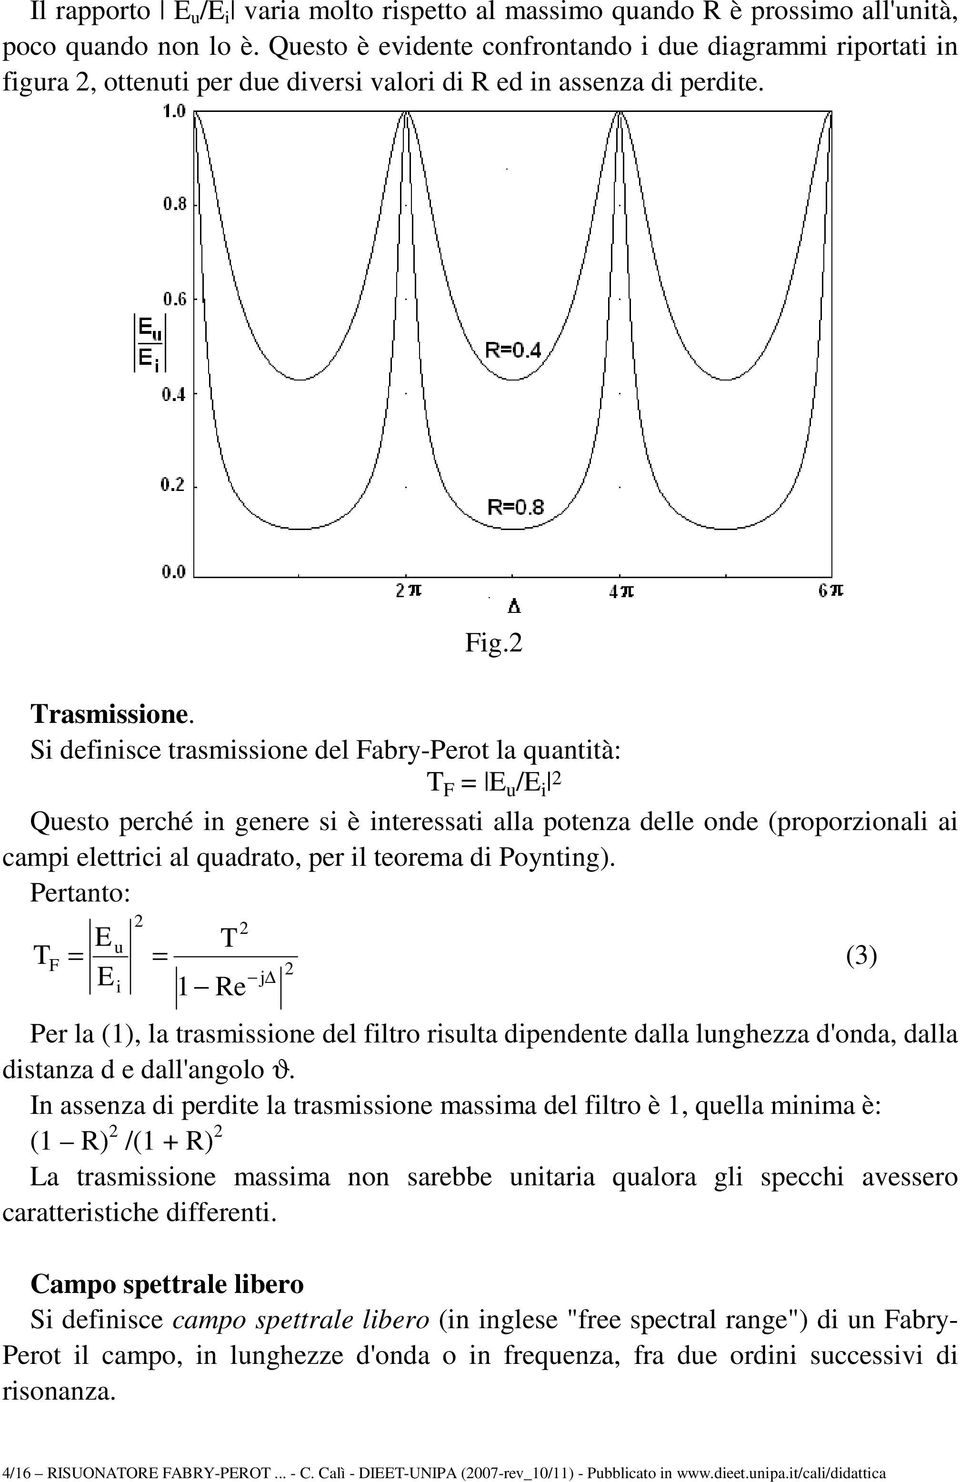 Prtanto: u F (3) Pr la (), la trasmsson dl fltro rsulta dpndnt dalla lunghzza d'onda, dalla dstanza d dall'angolo ϑ.